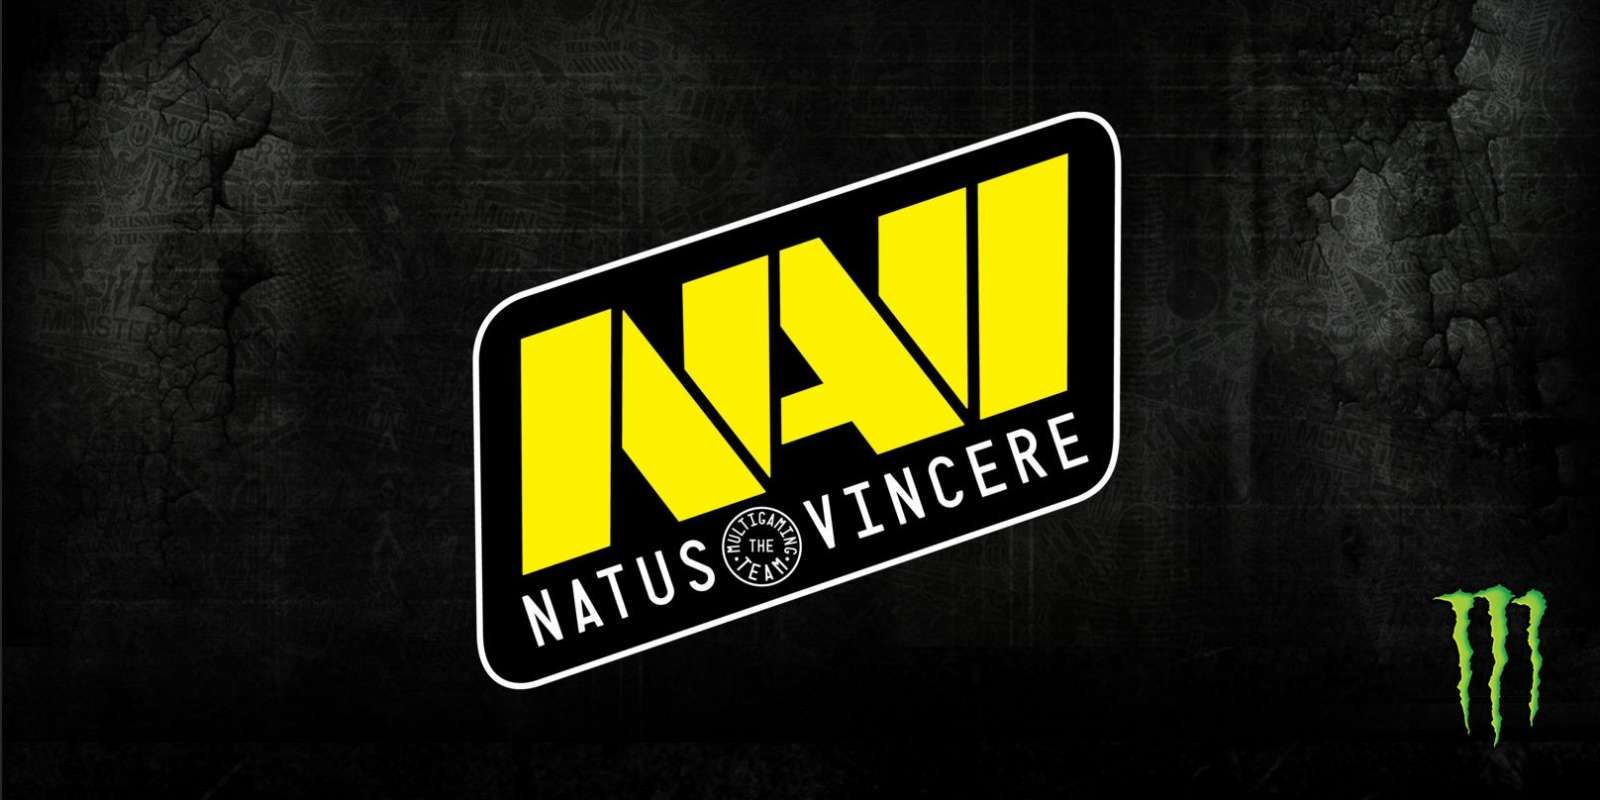 Natus Vincere выиграли рекордное количество призовых за победу в онлайн-турнире по CS:GO